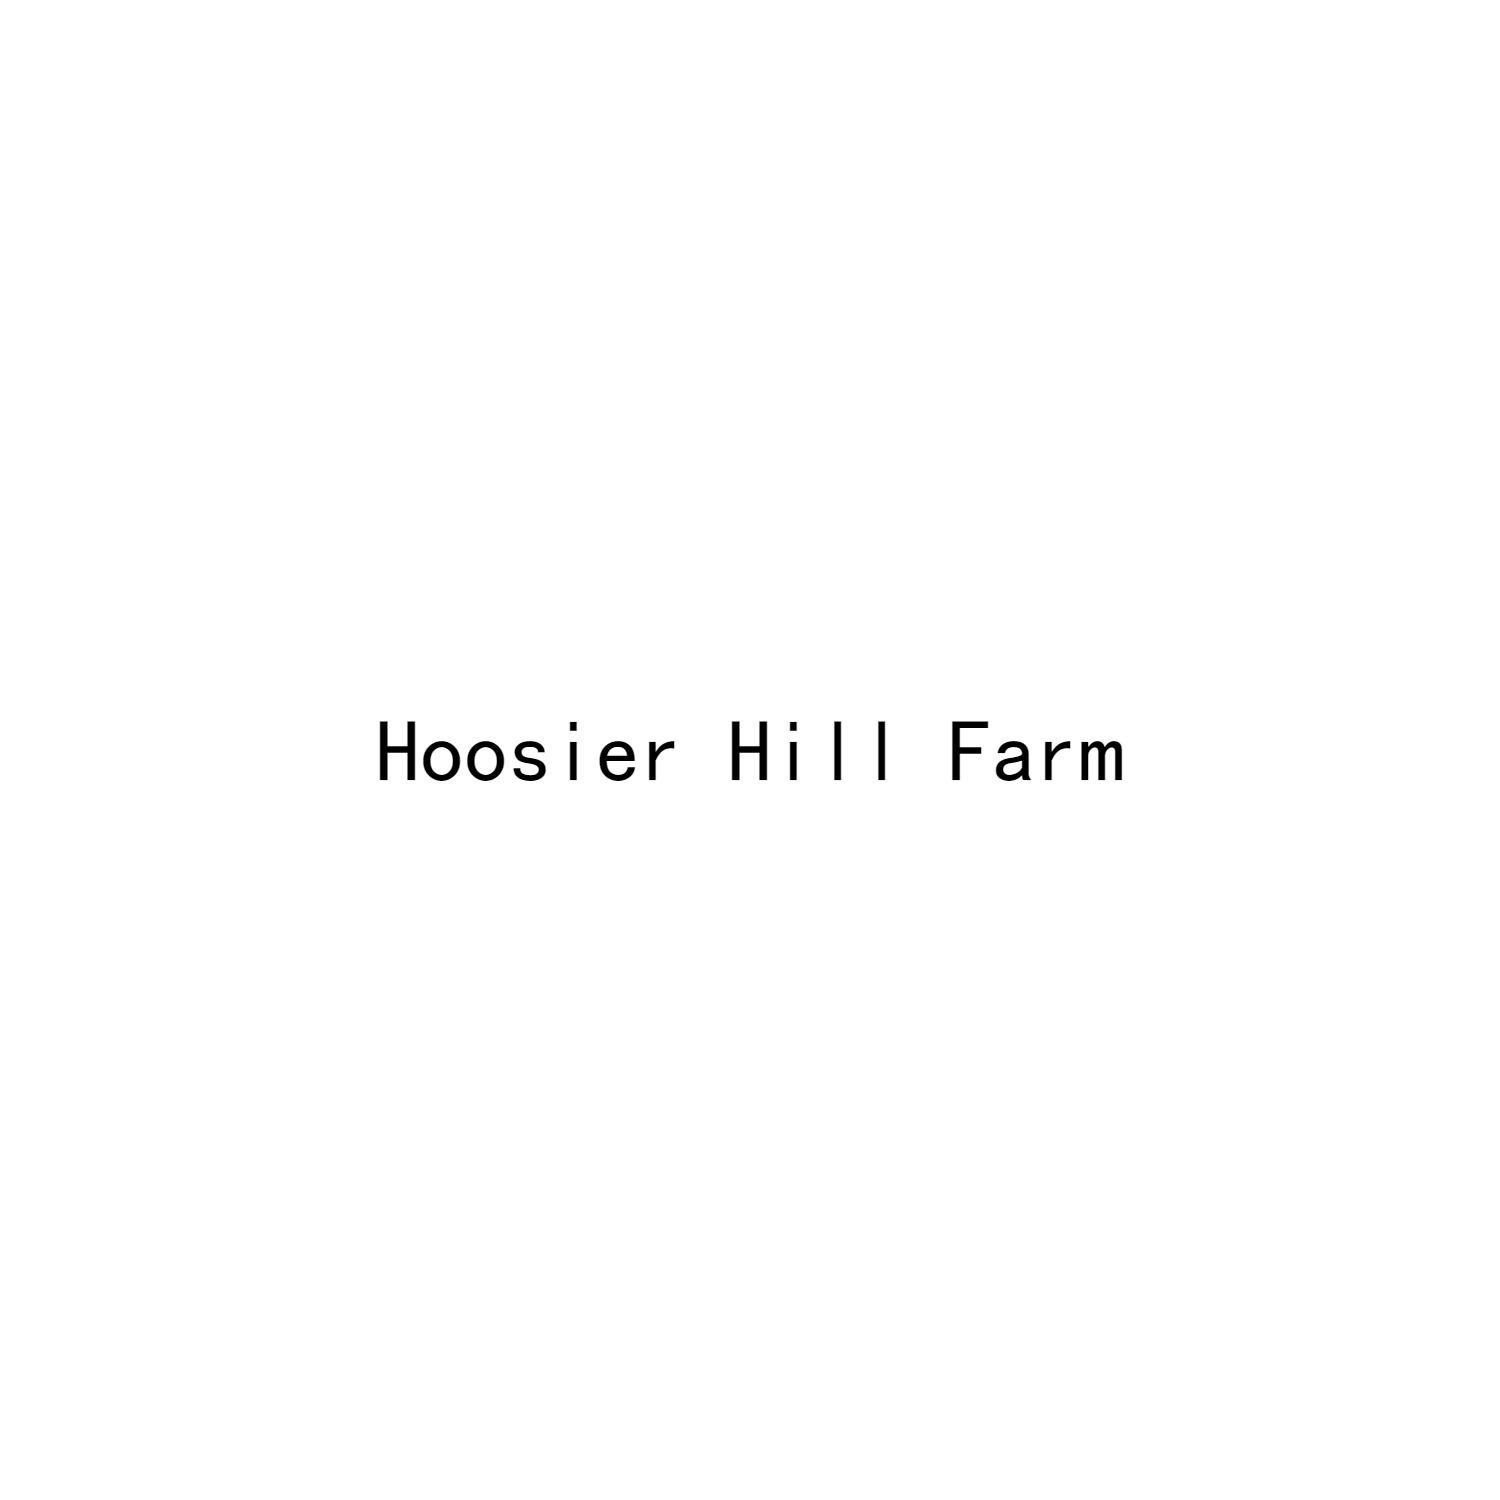 HOOSIER HILL FARM